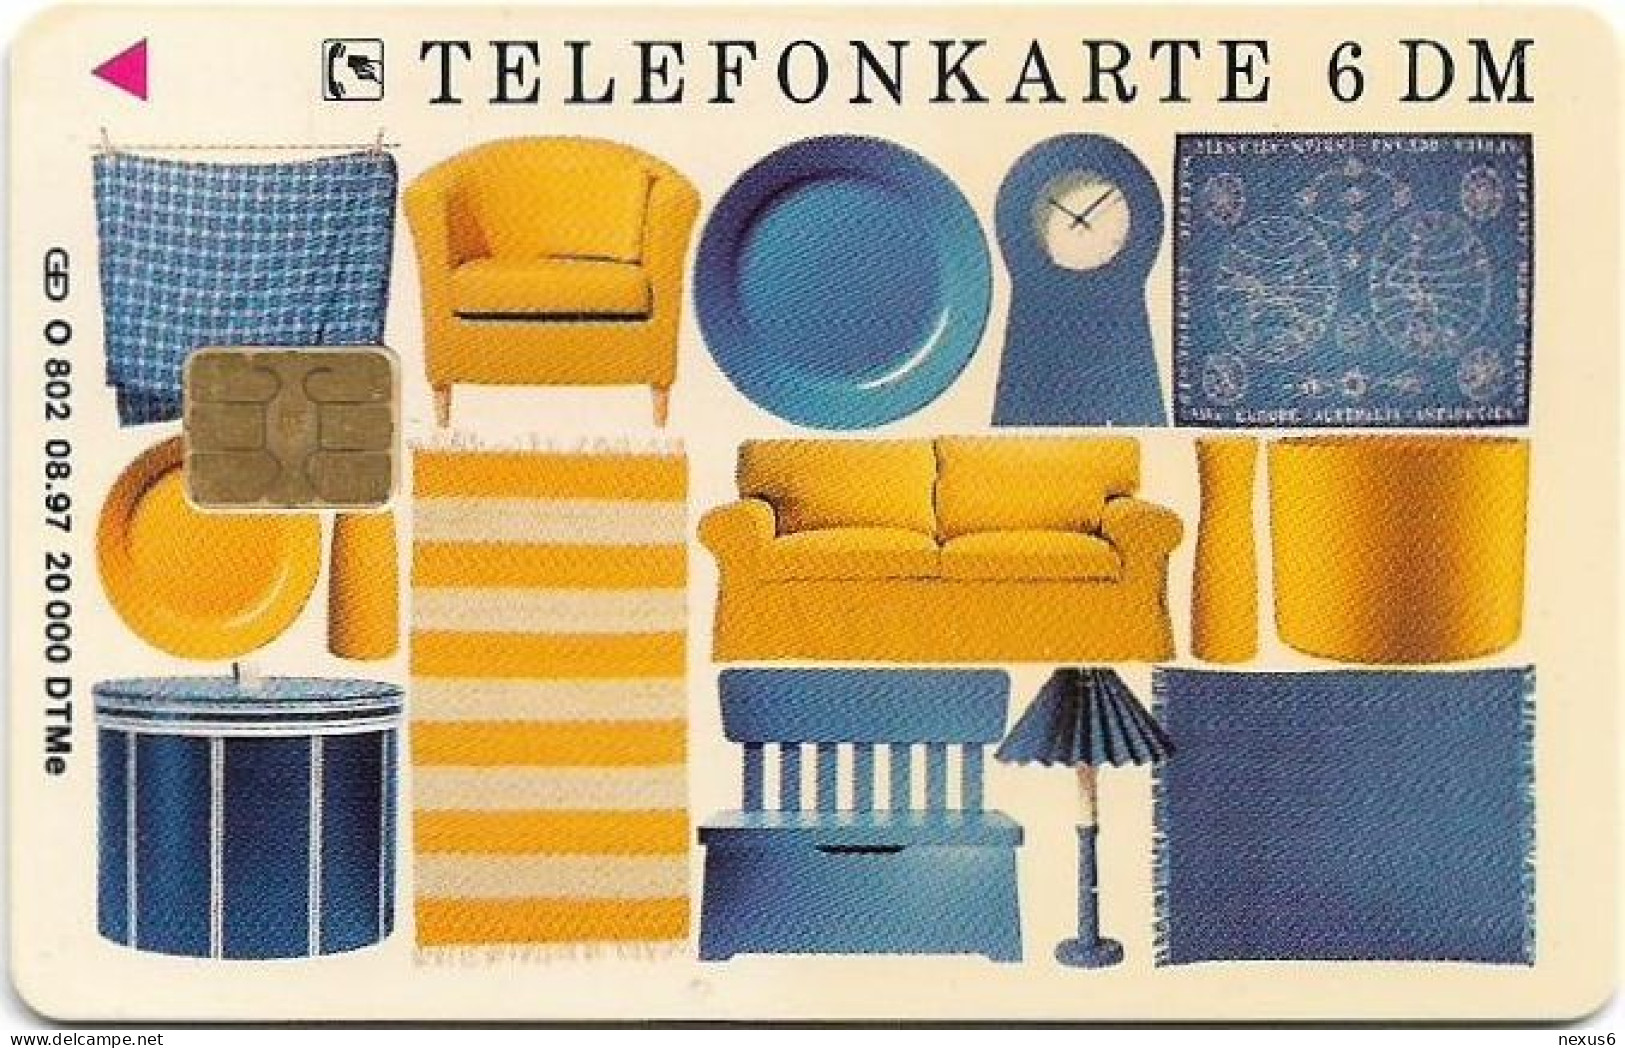 Germany - IKEA - Entdecke Die Möglichkeiten - O 0802 - 08.1997, 6DM, 20.000ex, Used - O-Reeksen : Klantenreeksen